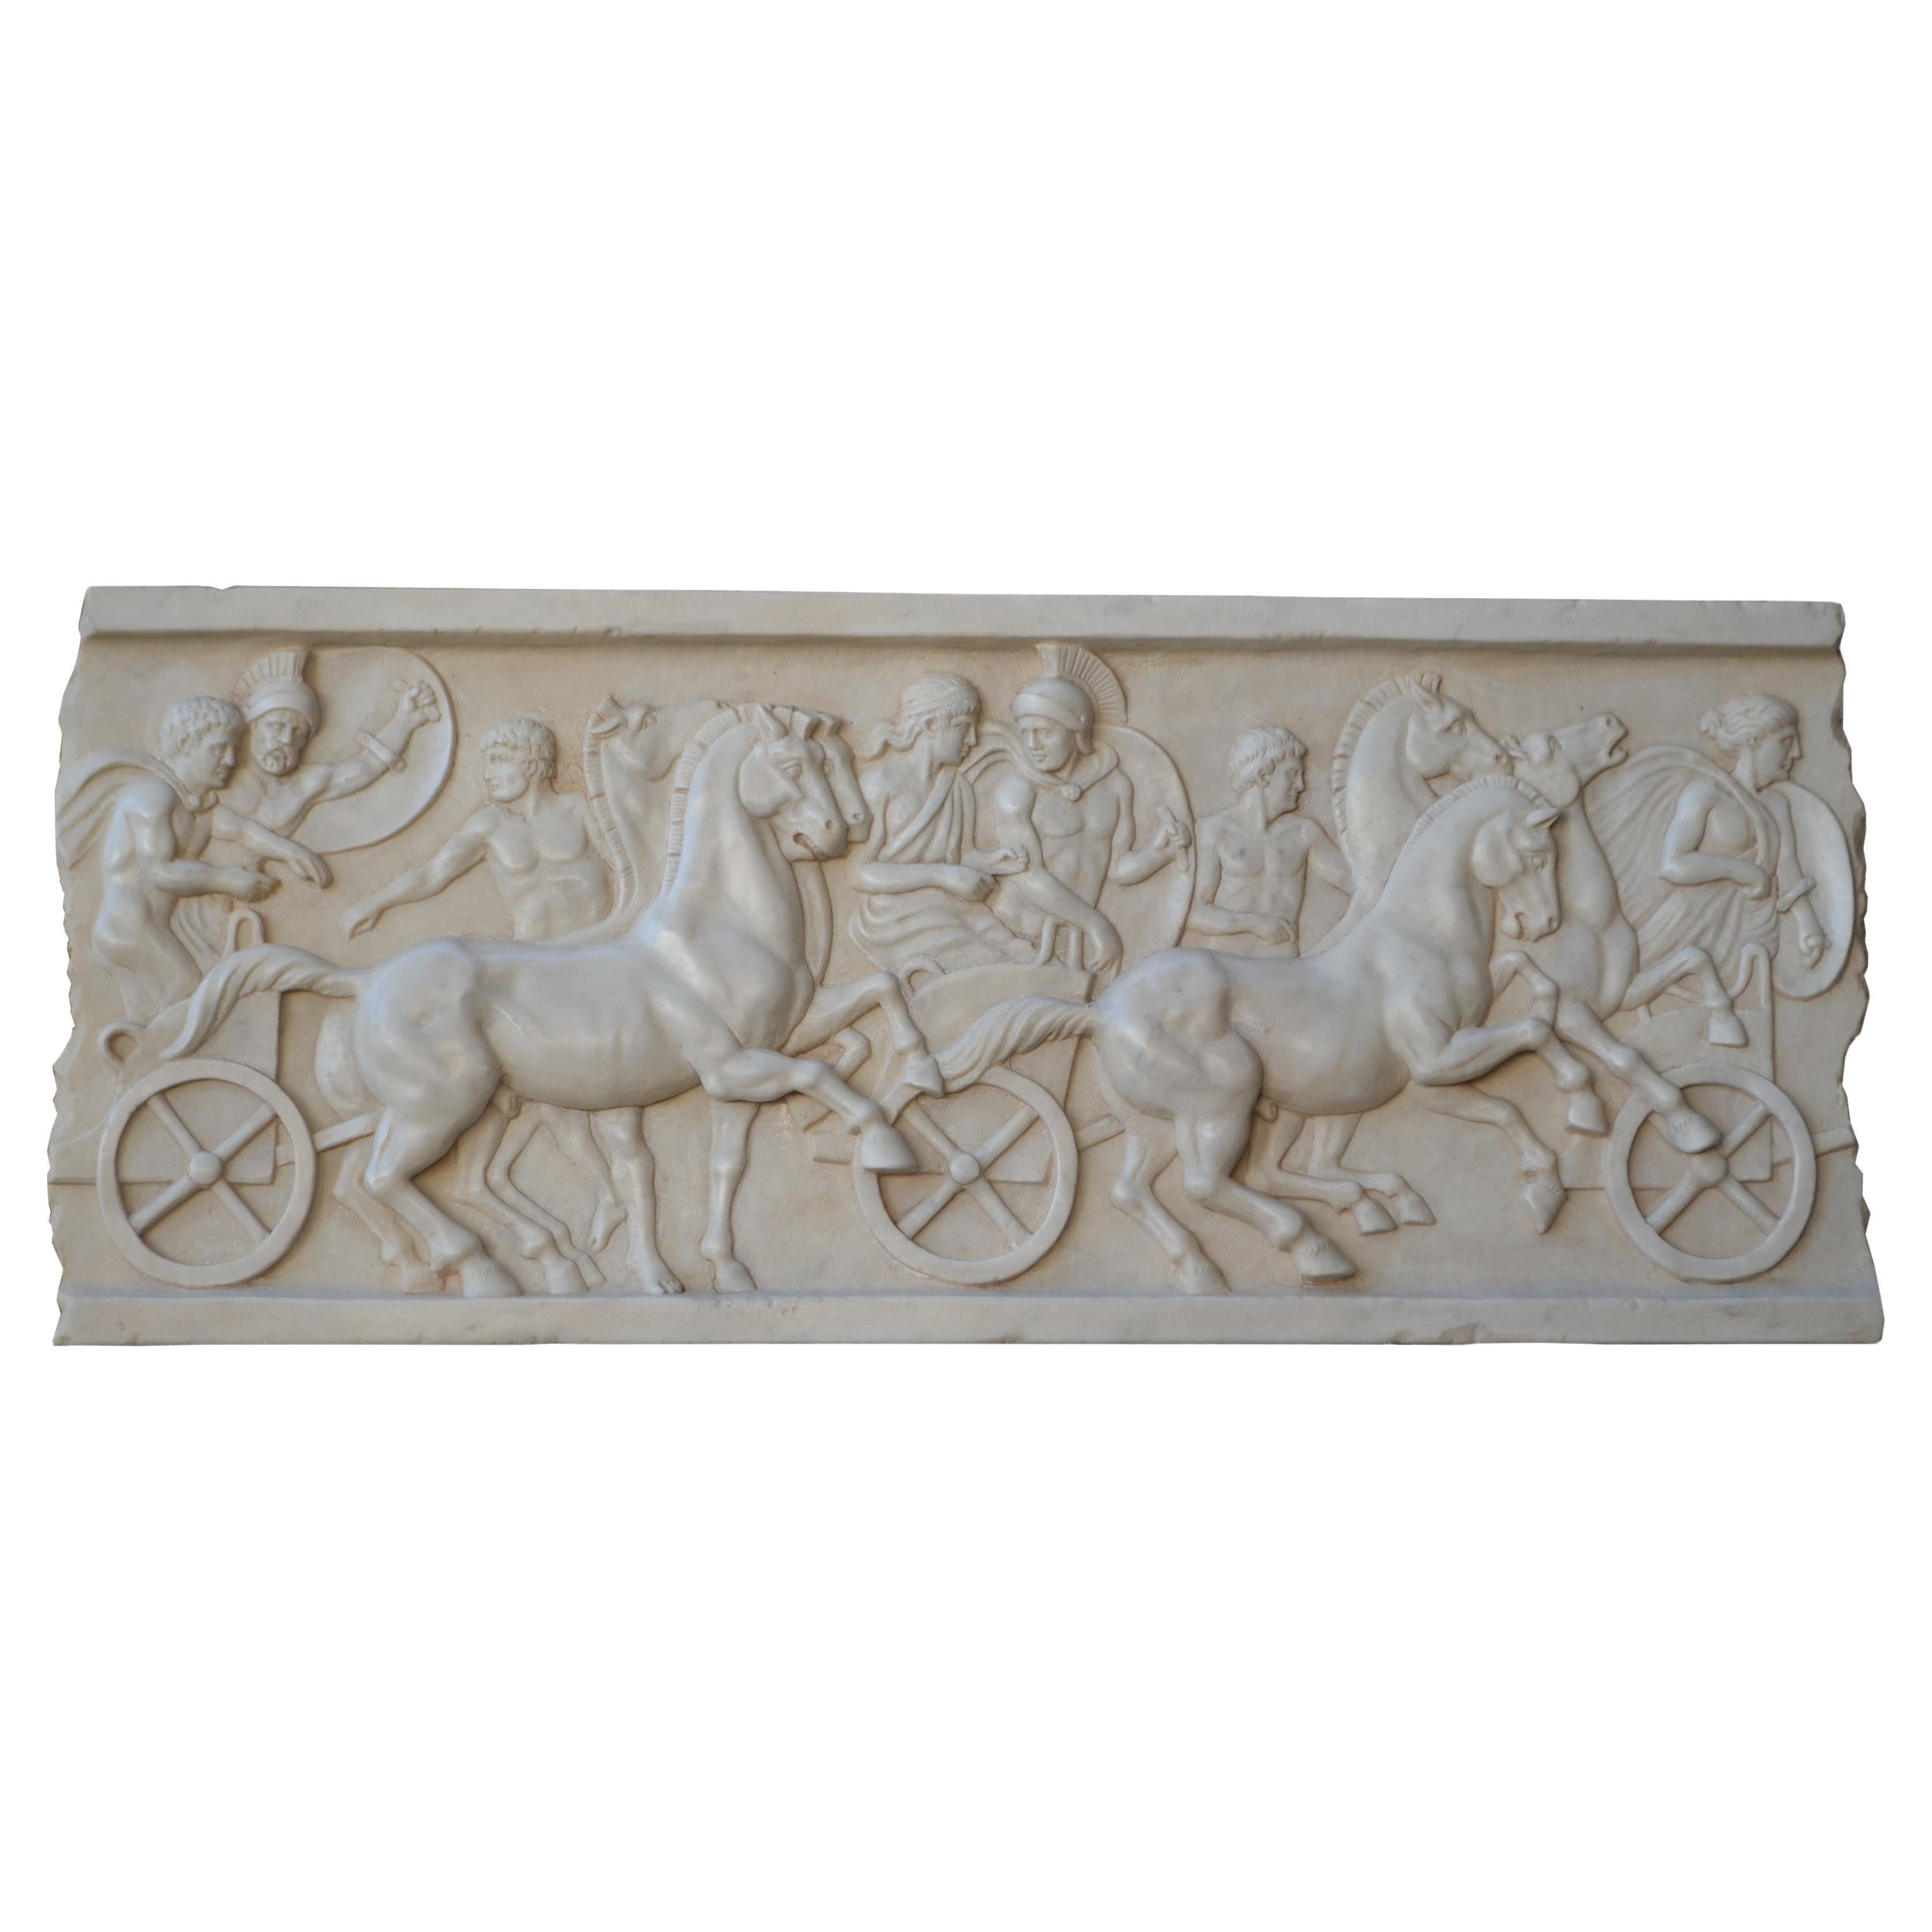 Altorilievo con scena di cavalli e bighe romane scolpito in marmo bianco Carrara